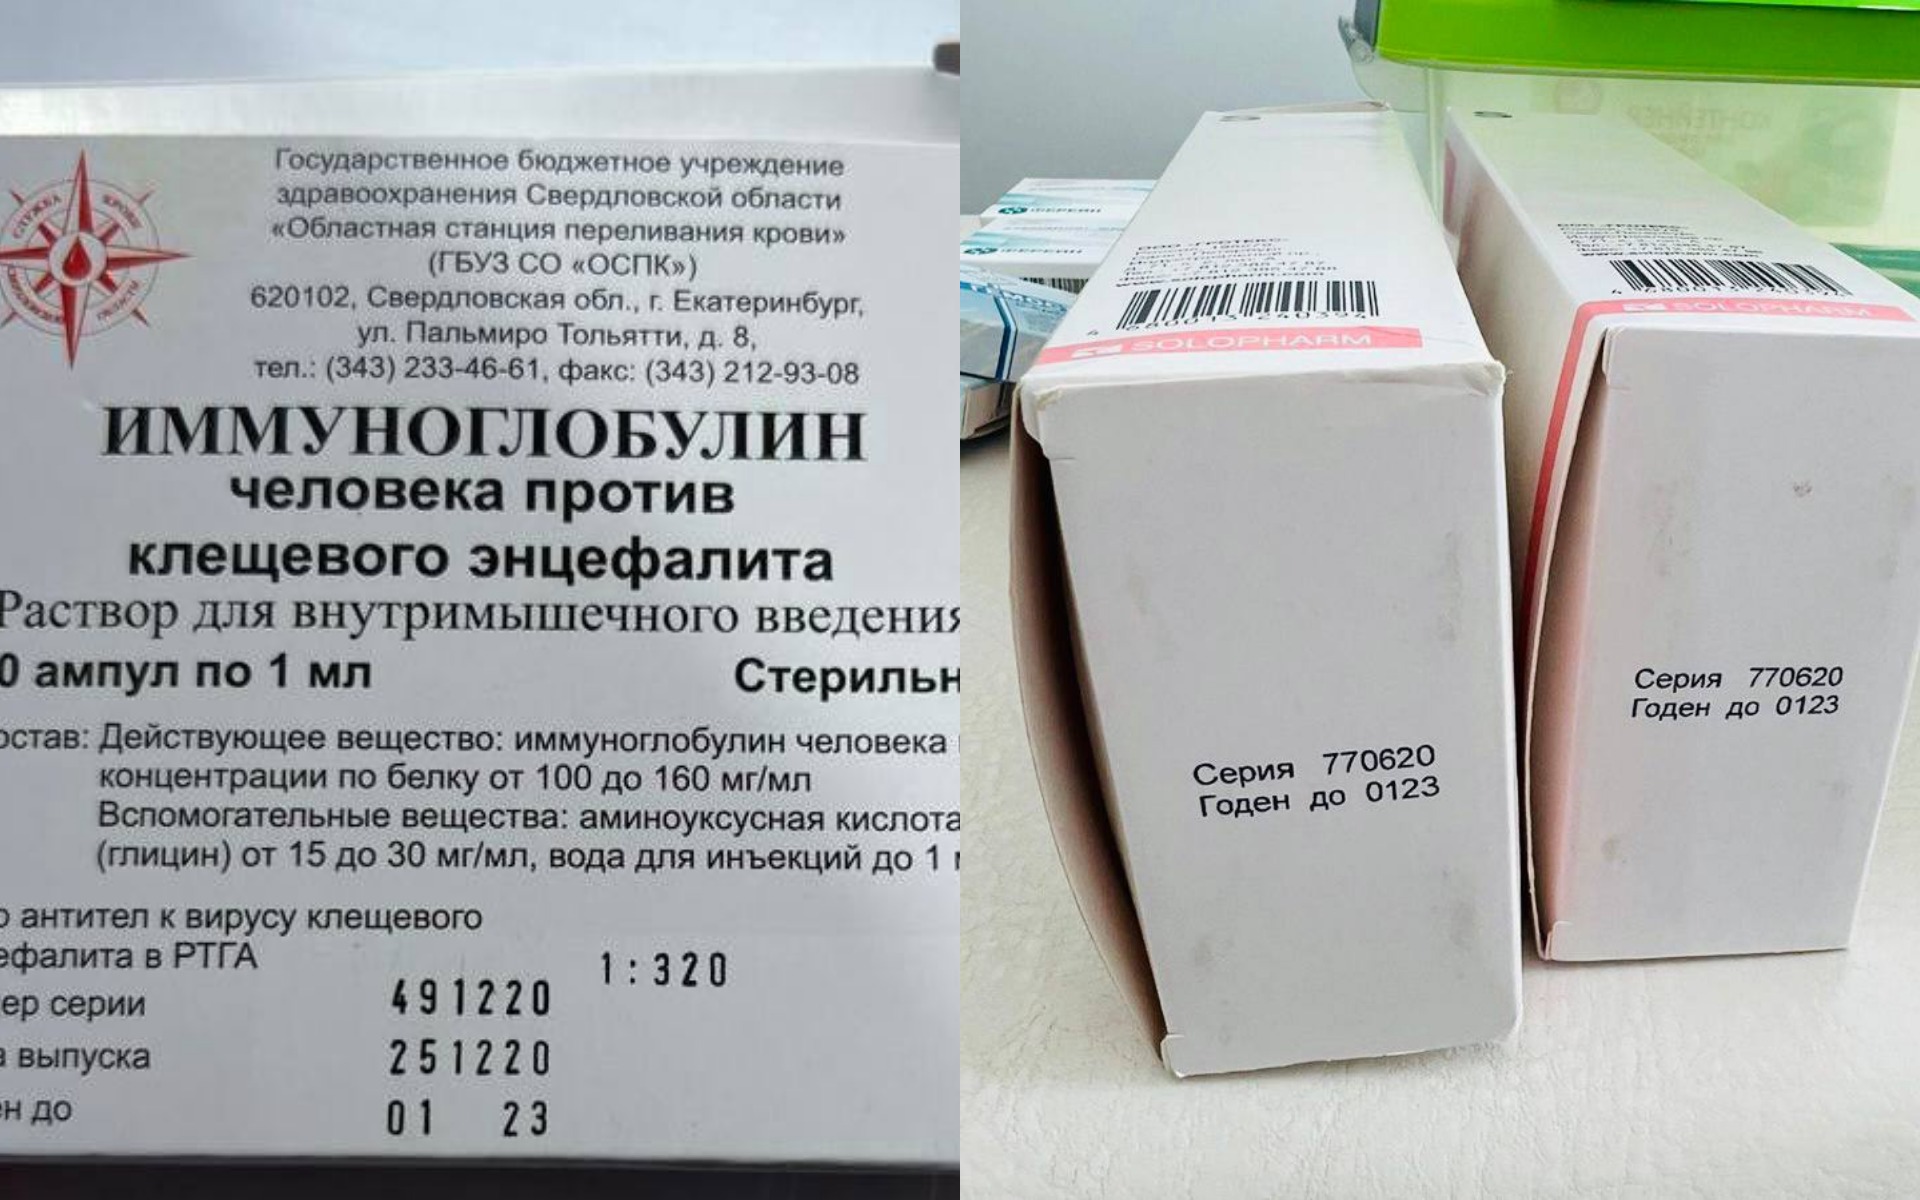 22 поликлиника новосибирск сайт. Просрочена прививка.